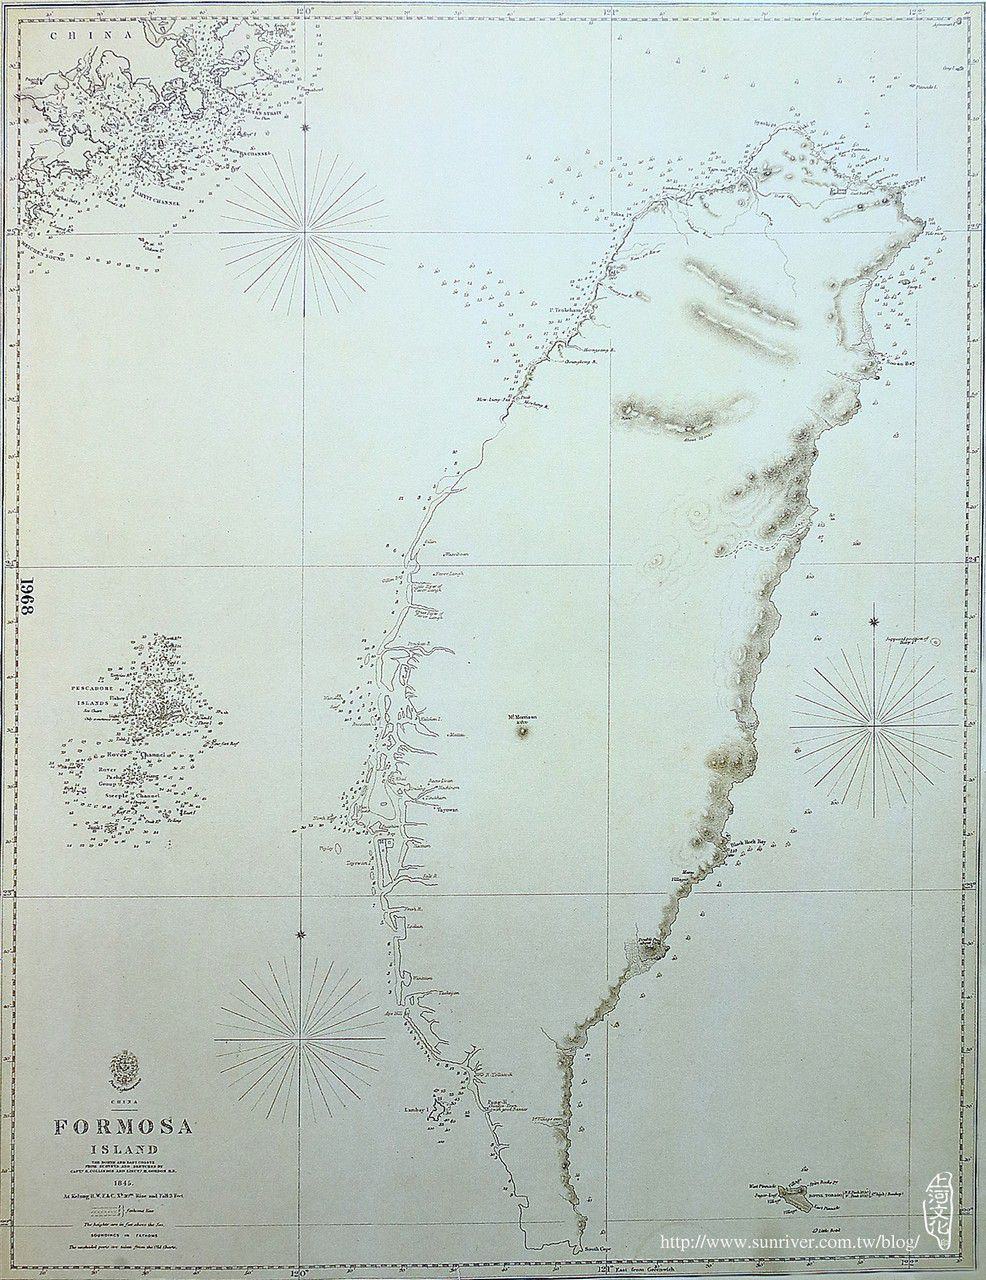 圖④ 1845年福爾摩沙島圖(最早出現的英文山名)